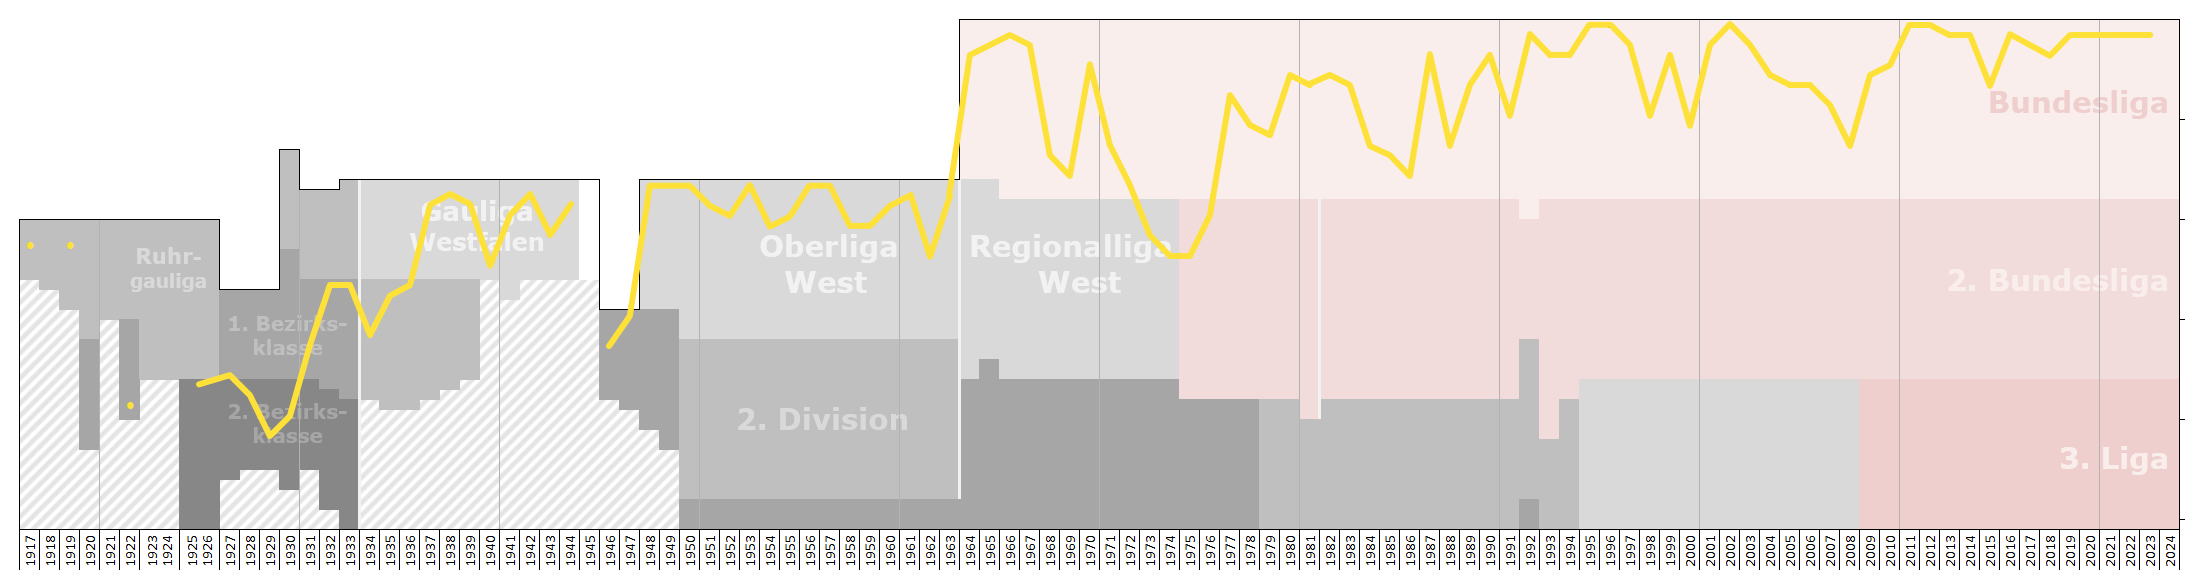 ÙÙÙ Borussia Dortmund Performance Chart Png ÙÙÙÙØ¨ÙØ¯ÙØ§